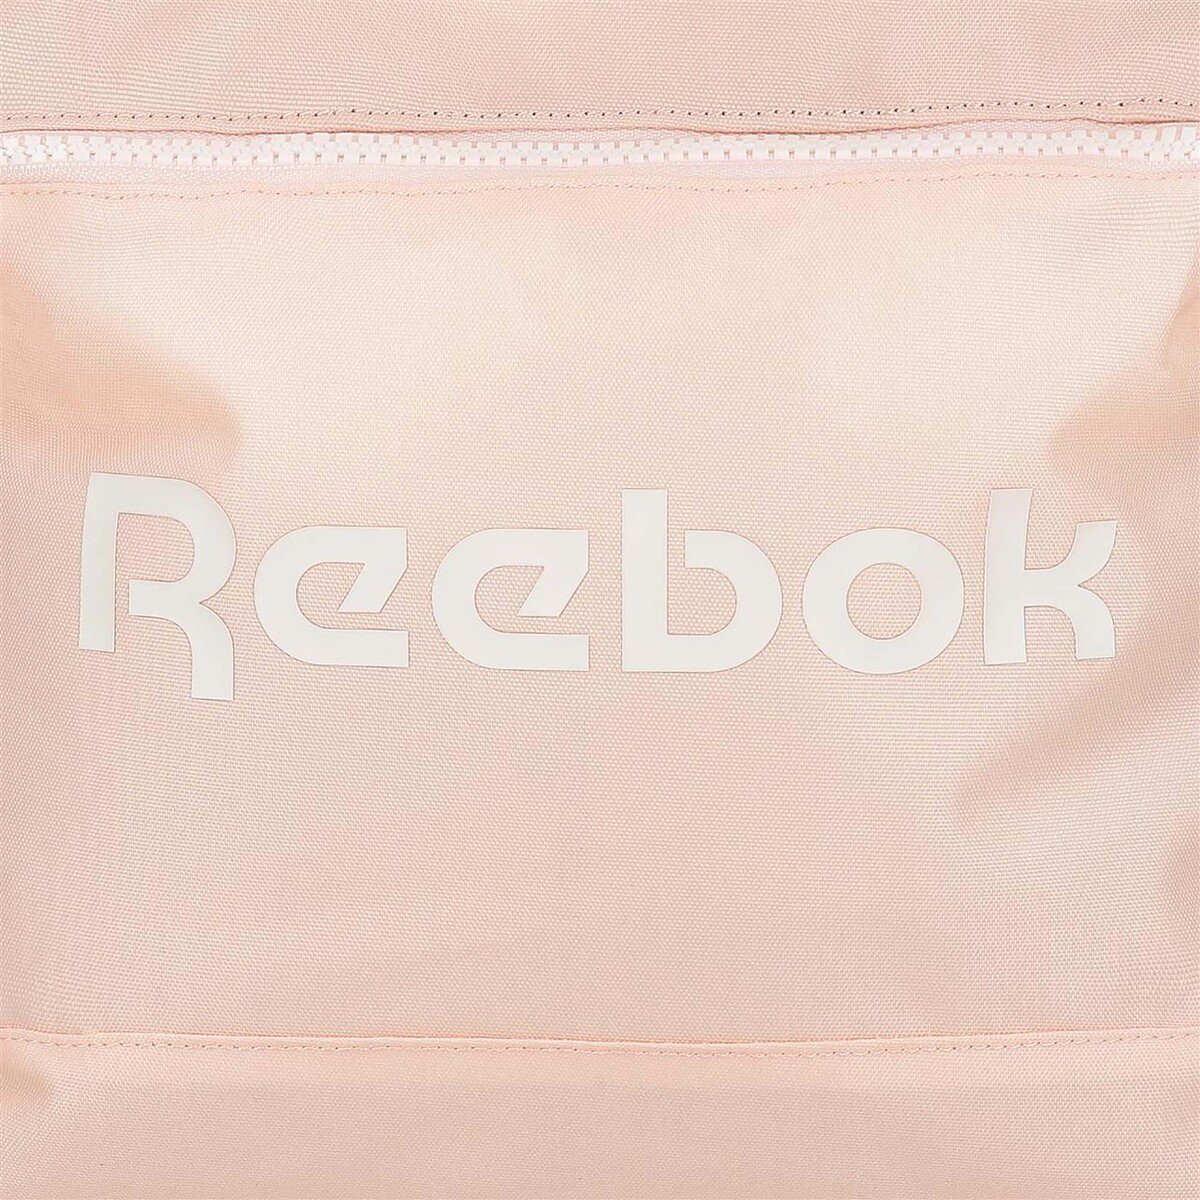 Reebok Backpack 45cm 8852323 Pink